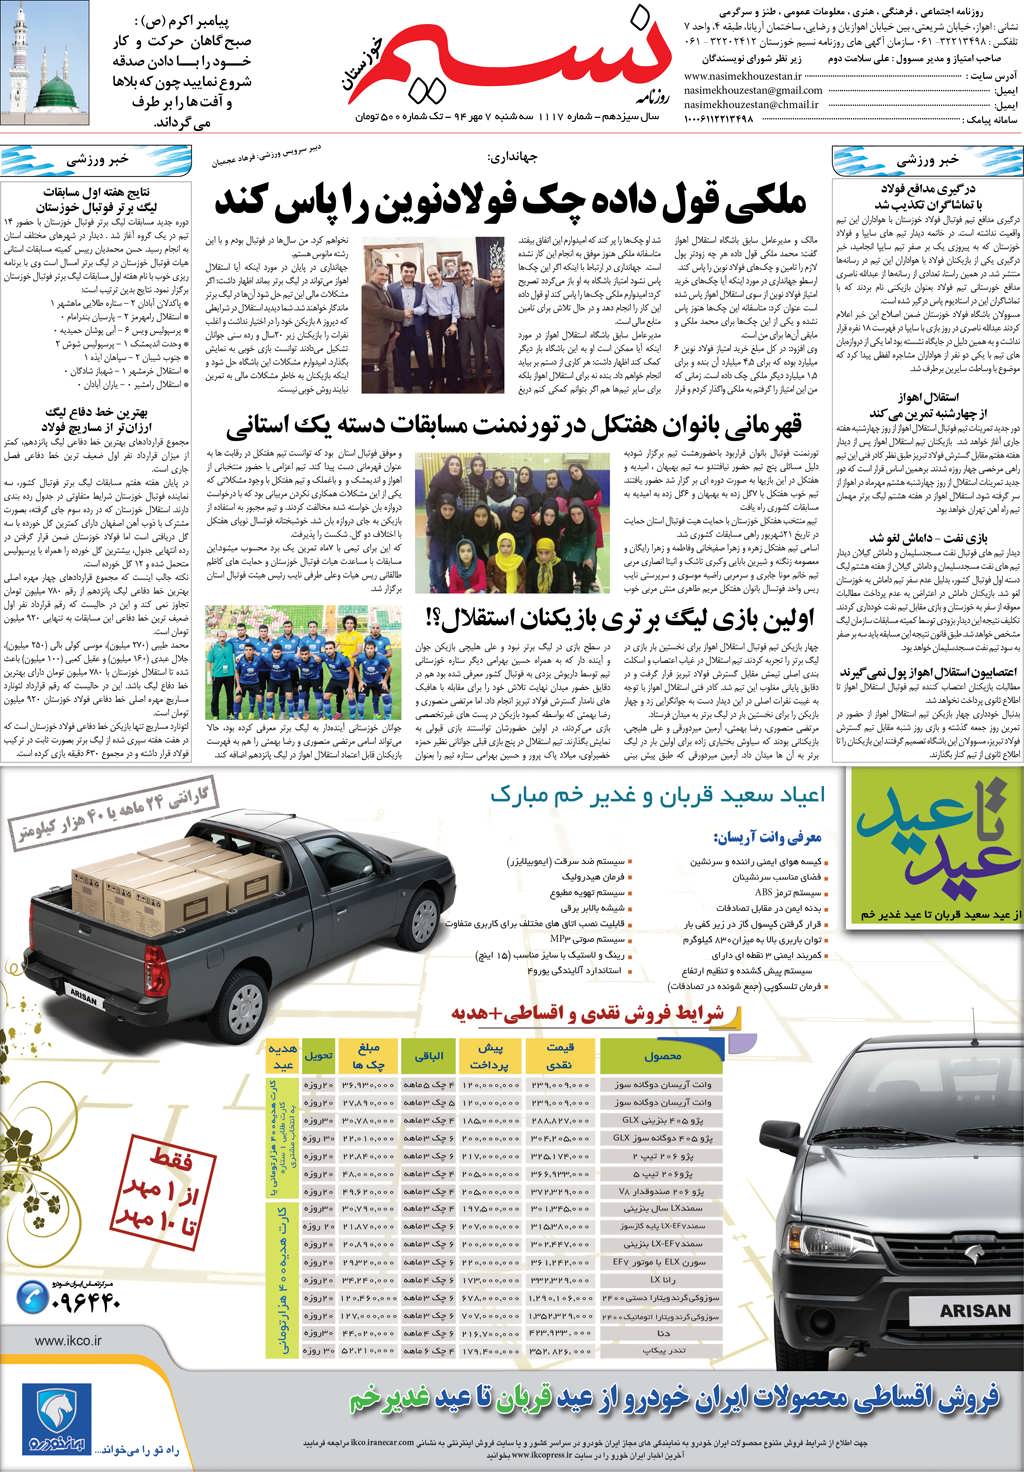 صفحه آخر روزنامه نسیم شماره 1117